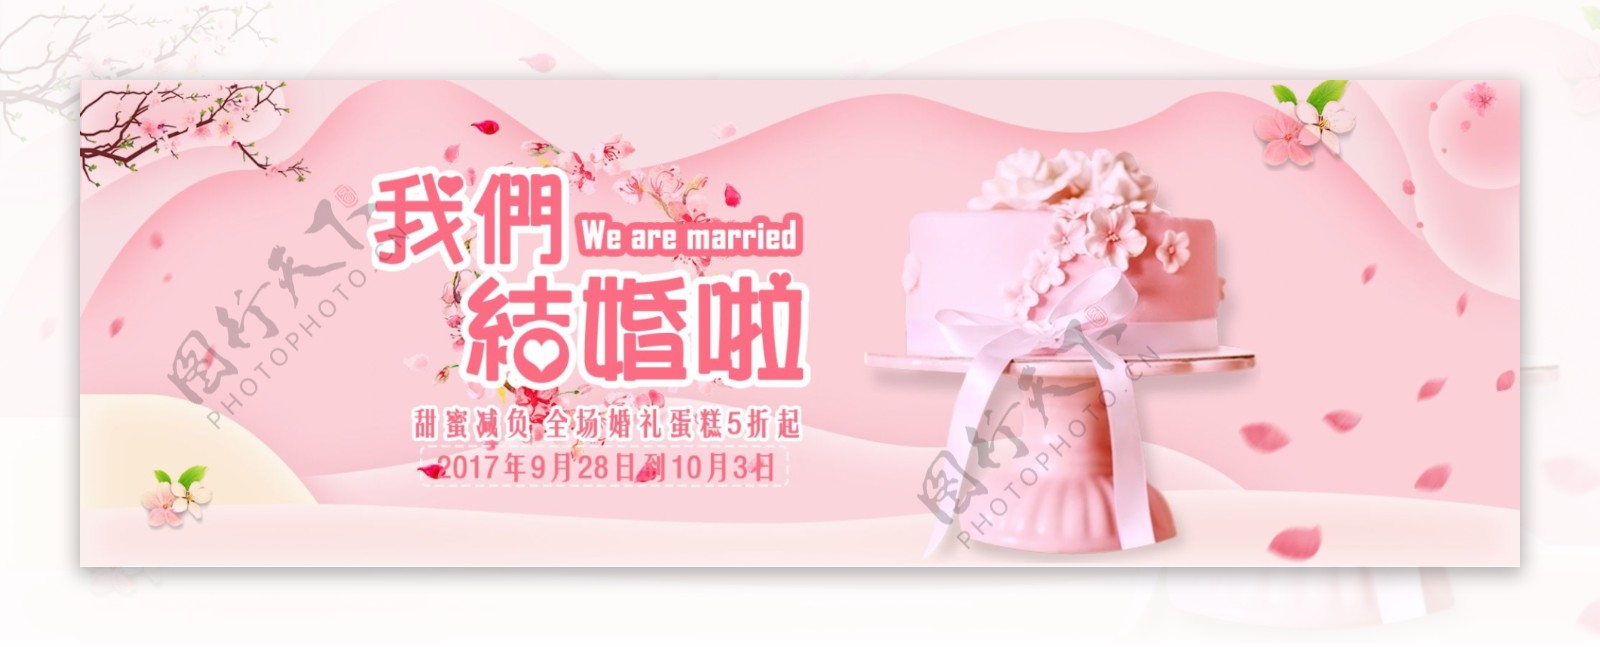 粉红色浪漫风婚礼蛋糕促销海报banner电商海报